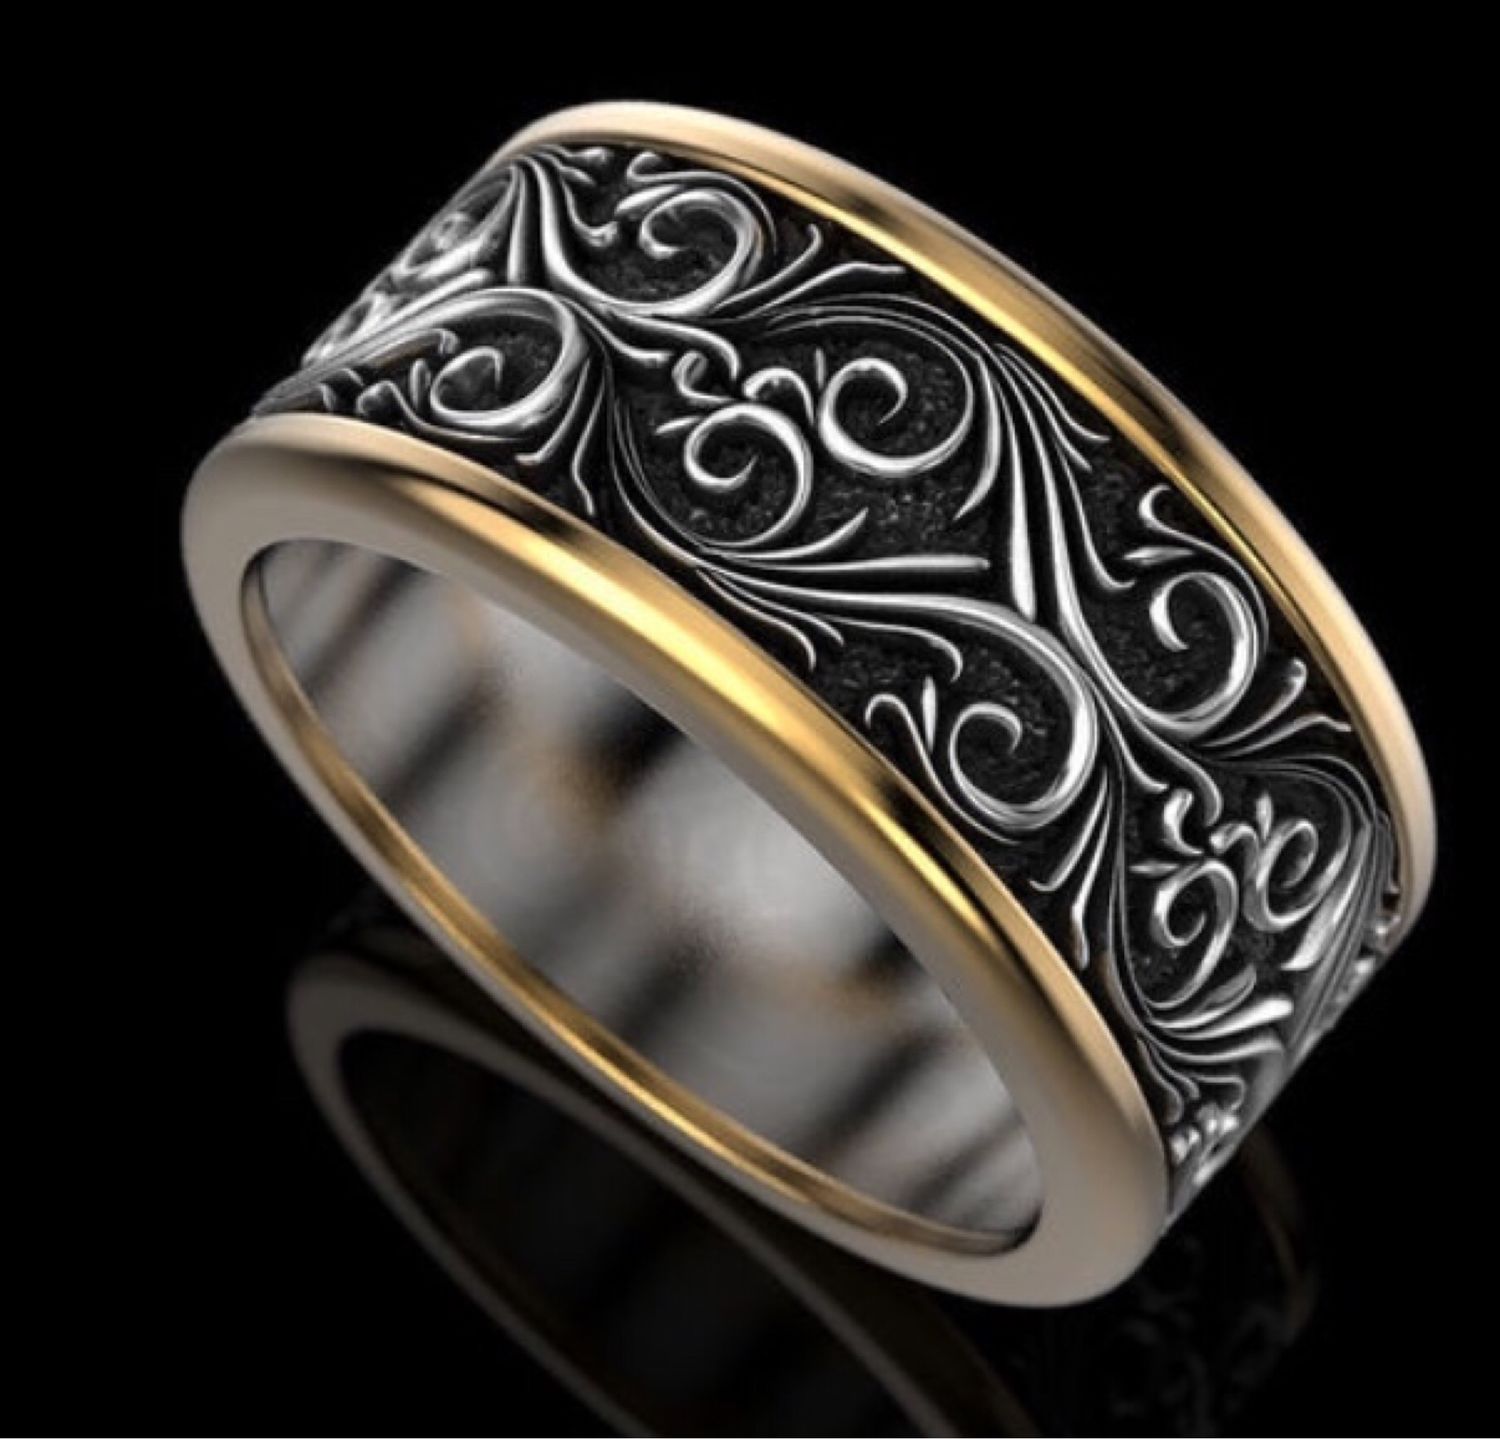 Обручальное кольцо серебро мужское. Серебро черненое с позолотой 925. Черненое серебро кольца mujskoe. Кольца из черненого серебра женские. Кольцо черненое серебро с позолотой женское.